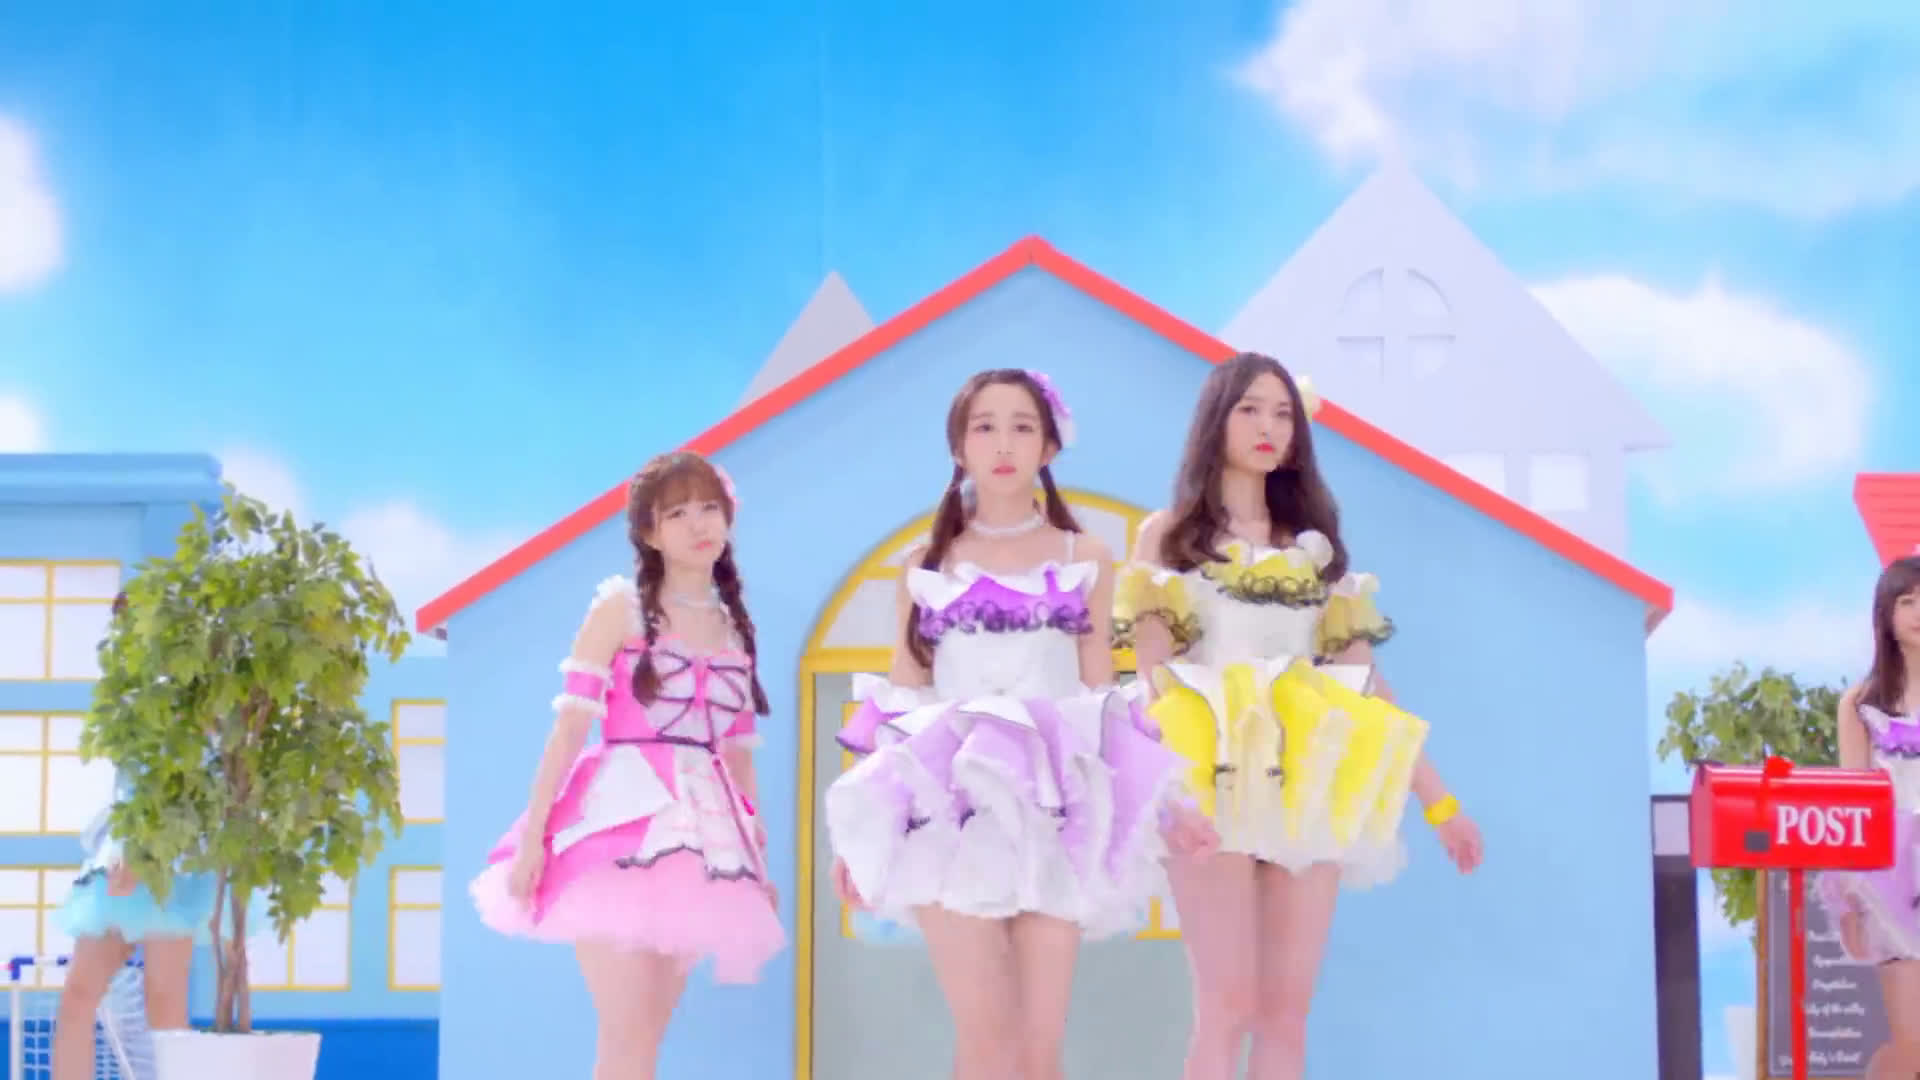 161121 SNH48 MV 《哎呦爱呦》 舞蹈版下载